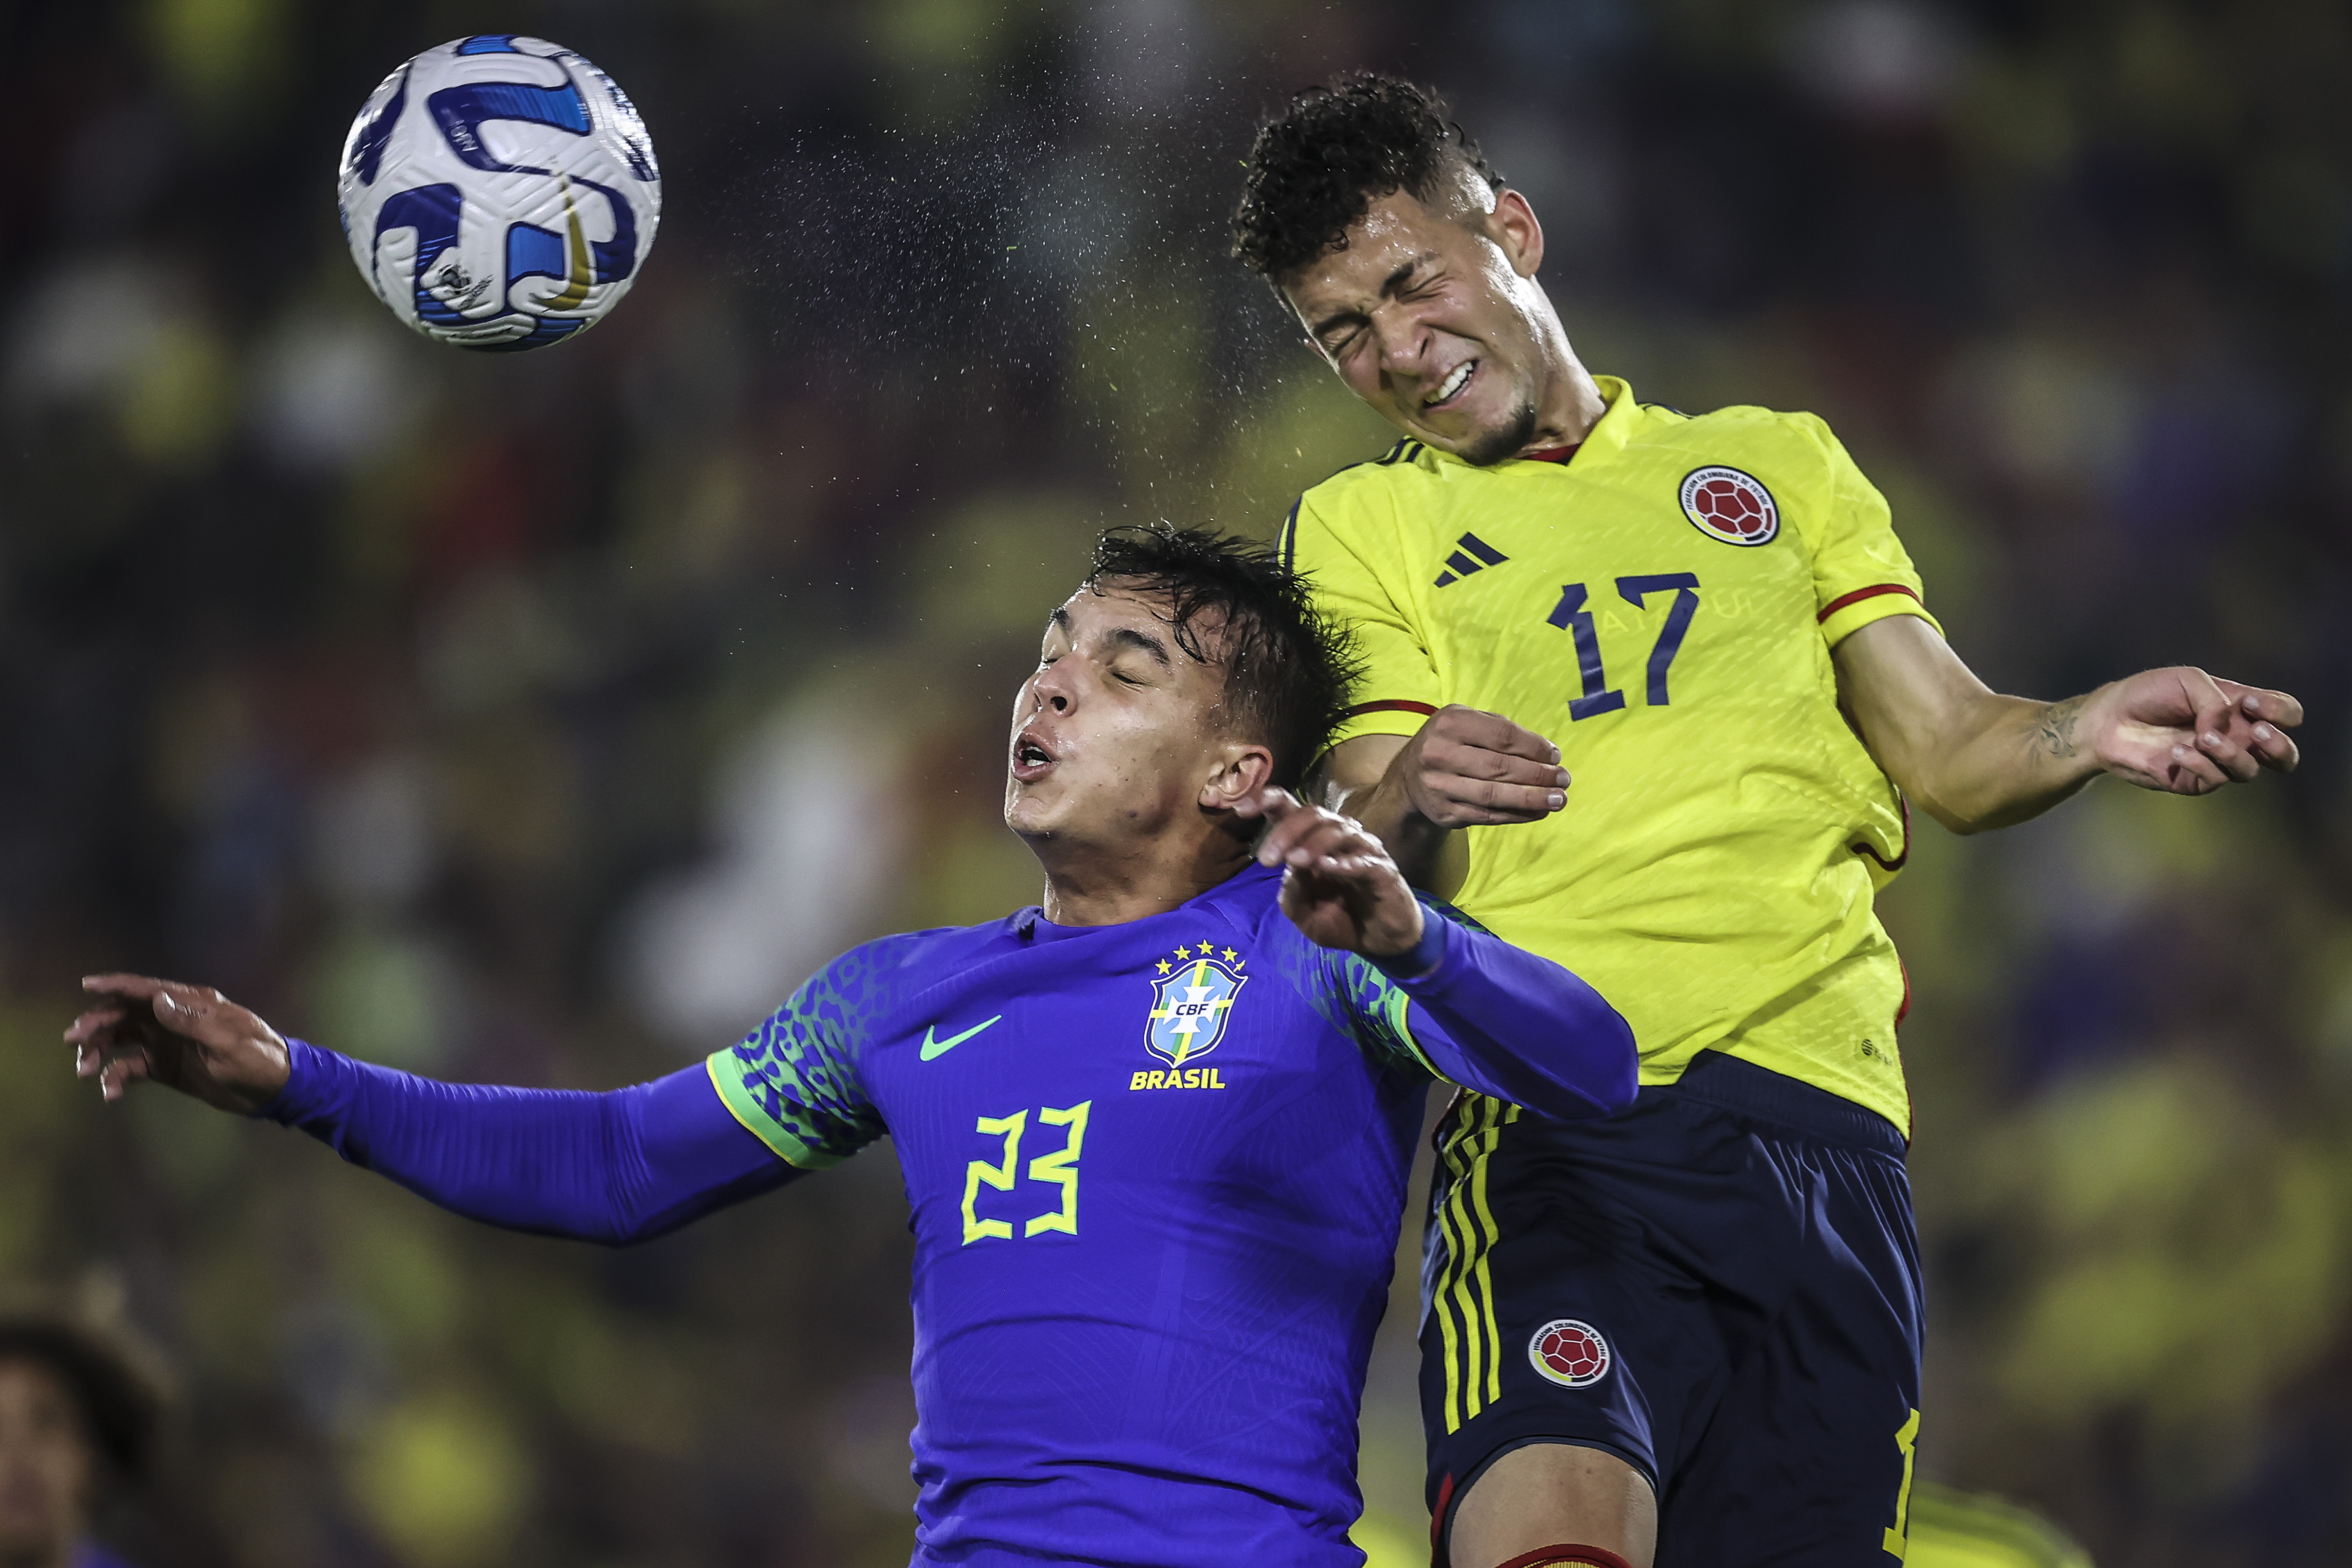 Acción de juego entre Brasil y Colombia. Getty.